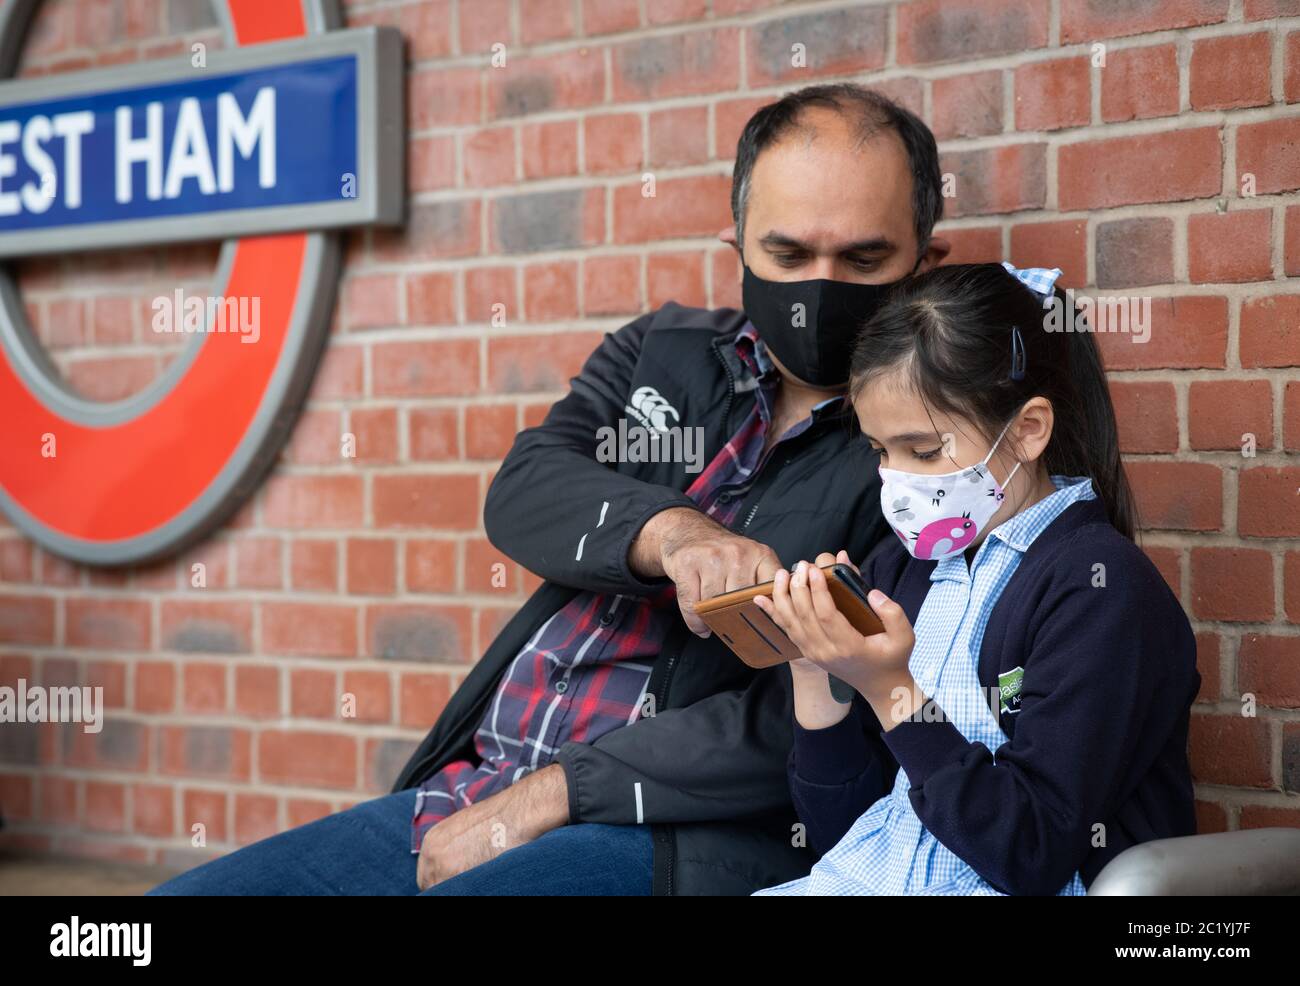 Les enfants portant un masque sur les transports en commun. Londres, Royaume-Uni. 7 juin 2020. FORMULAIRES DE CONSENTEMENT SIGNÉS POUR TOUTES LES PERSONNES EN PHOTO Banque D'Images